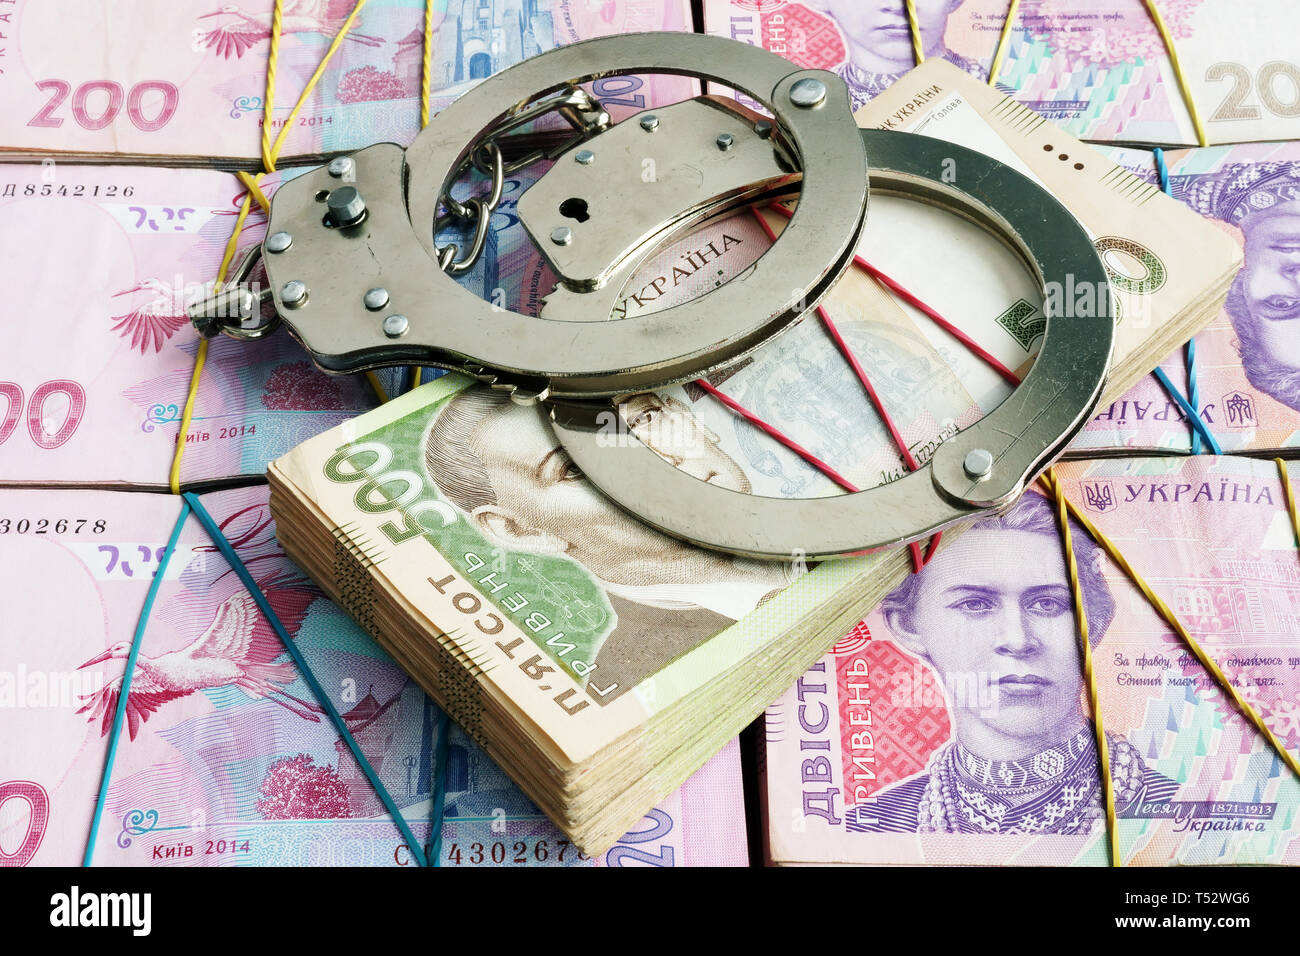 Handschellen auf ukrainische Währung Griwna. Korruption und Wirtschaftskriminalität oder Strafe. Stockfoto